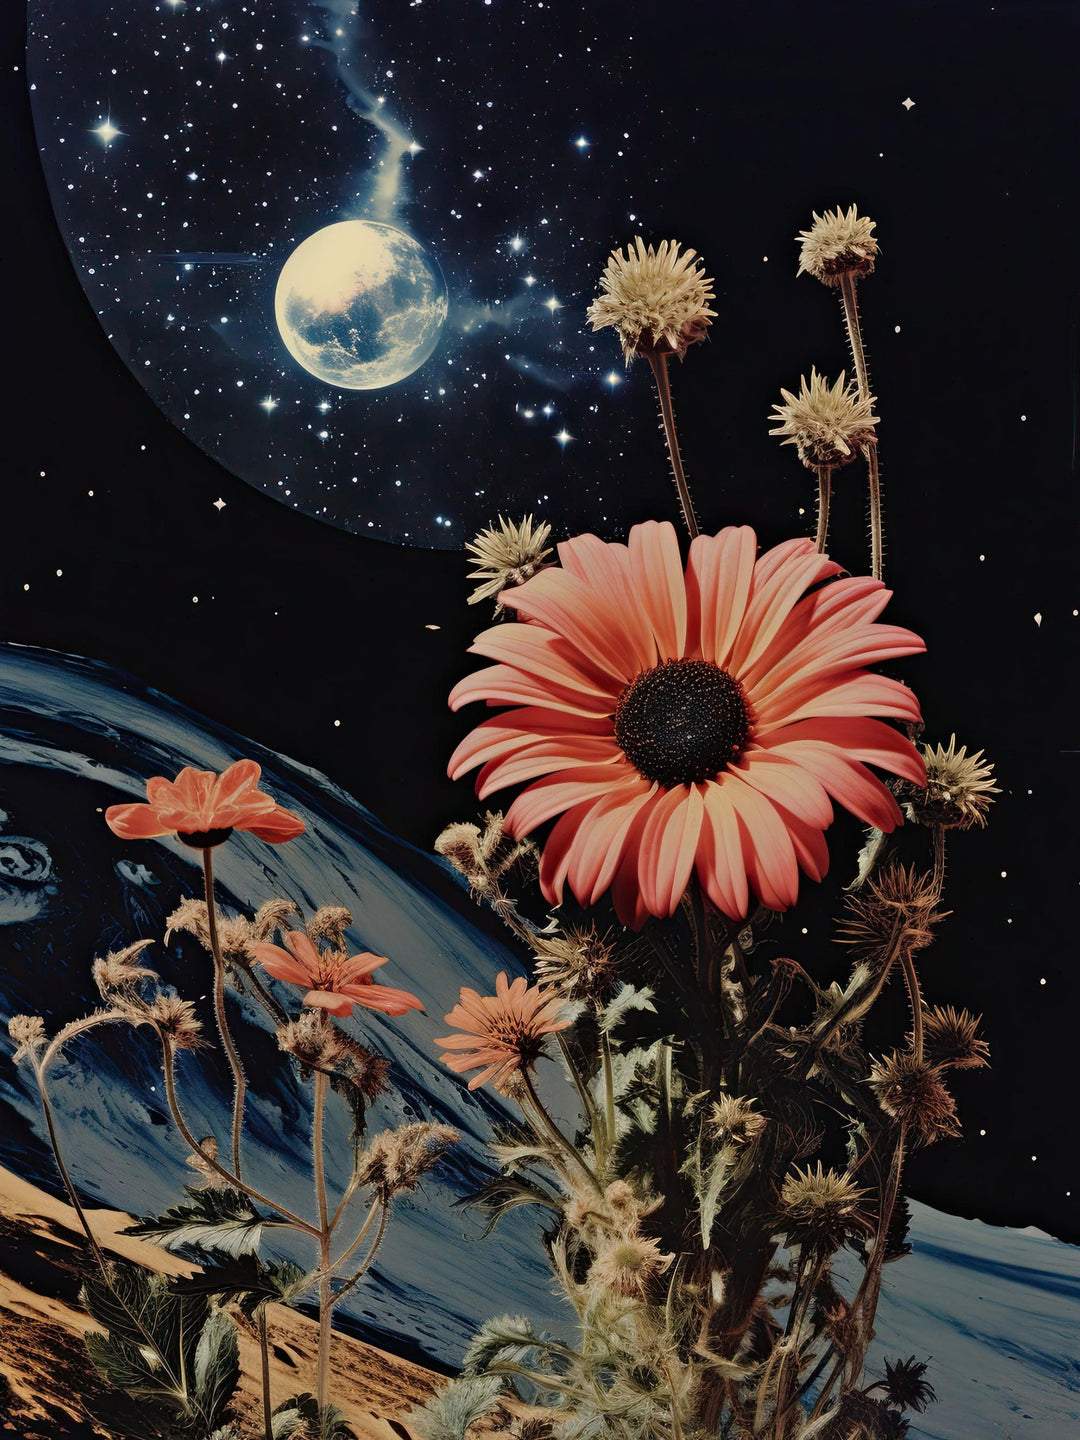 Retro Kosmische Blüte - Printree.ch Blumen, Kosmos, Leben, Mond, Natur, Poster, Sonnenblume, Sterne, Weltraum